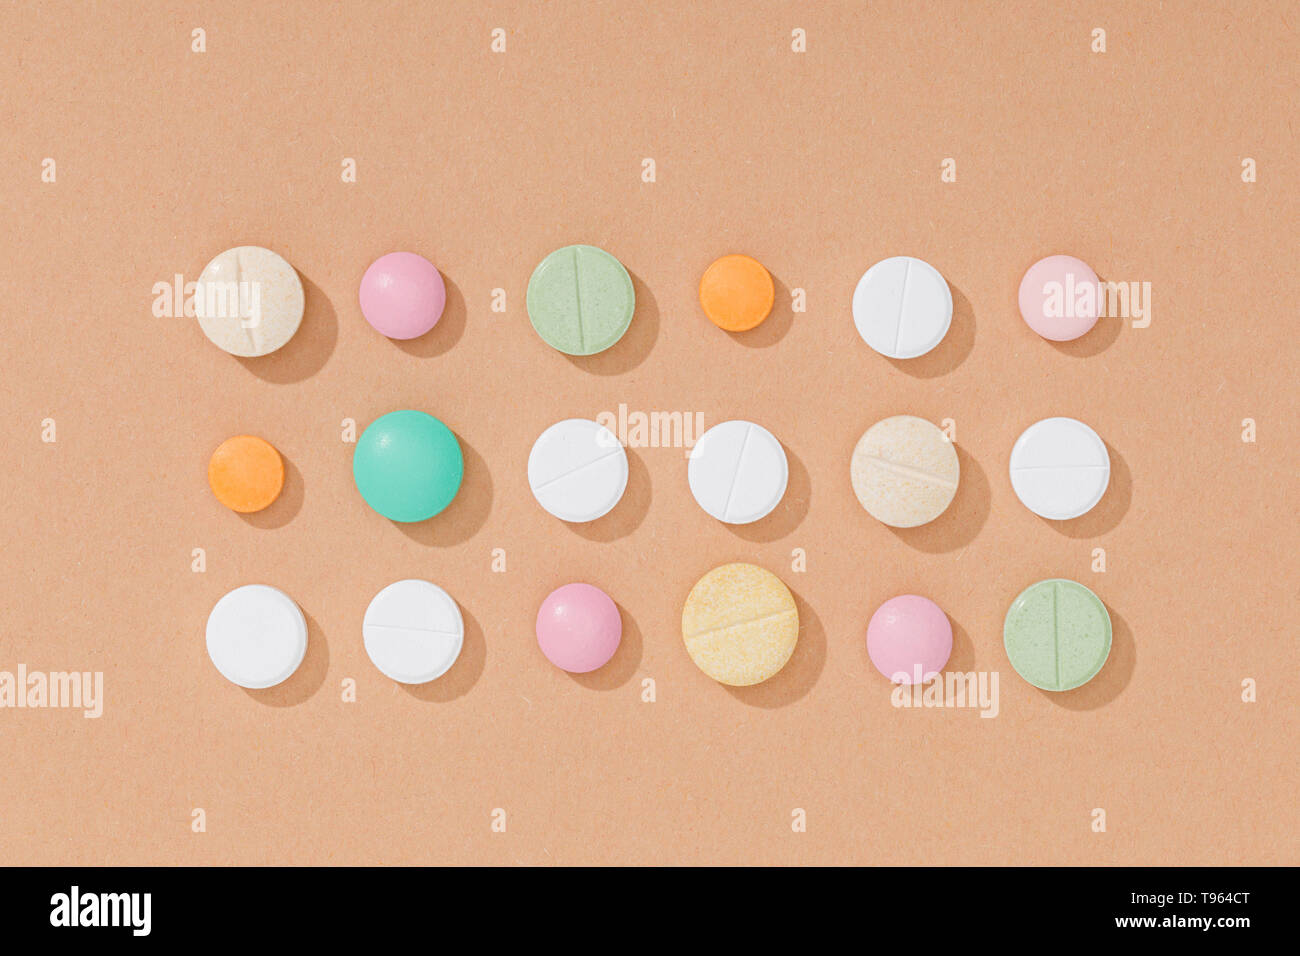 Piatto con laici pillole colorate sulla superficie marrone Foto Stock